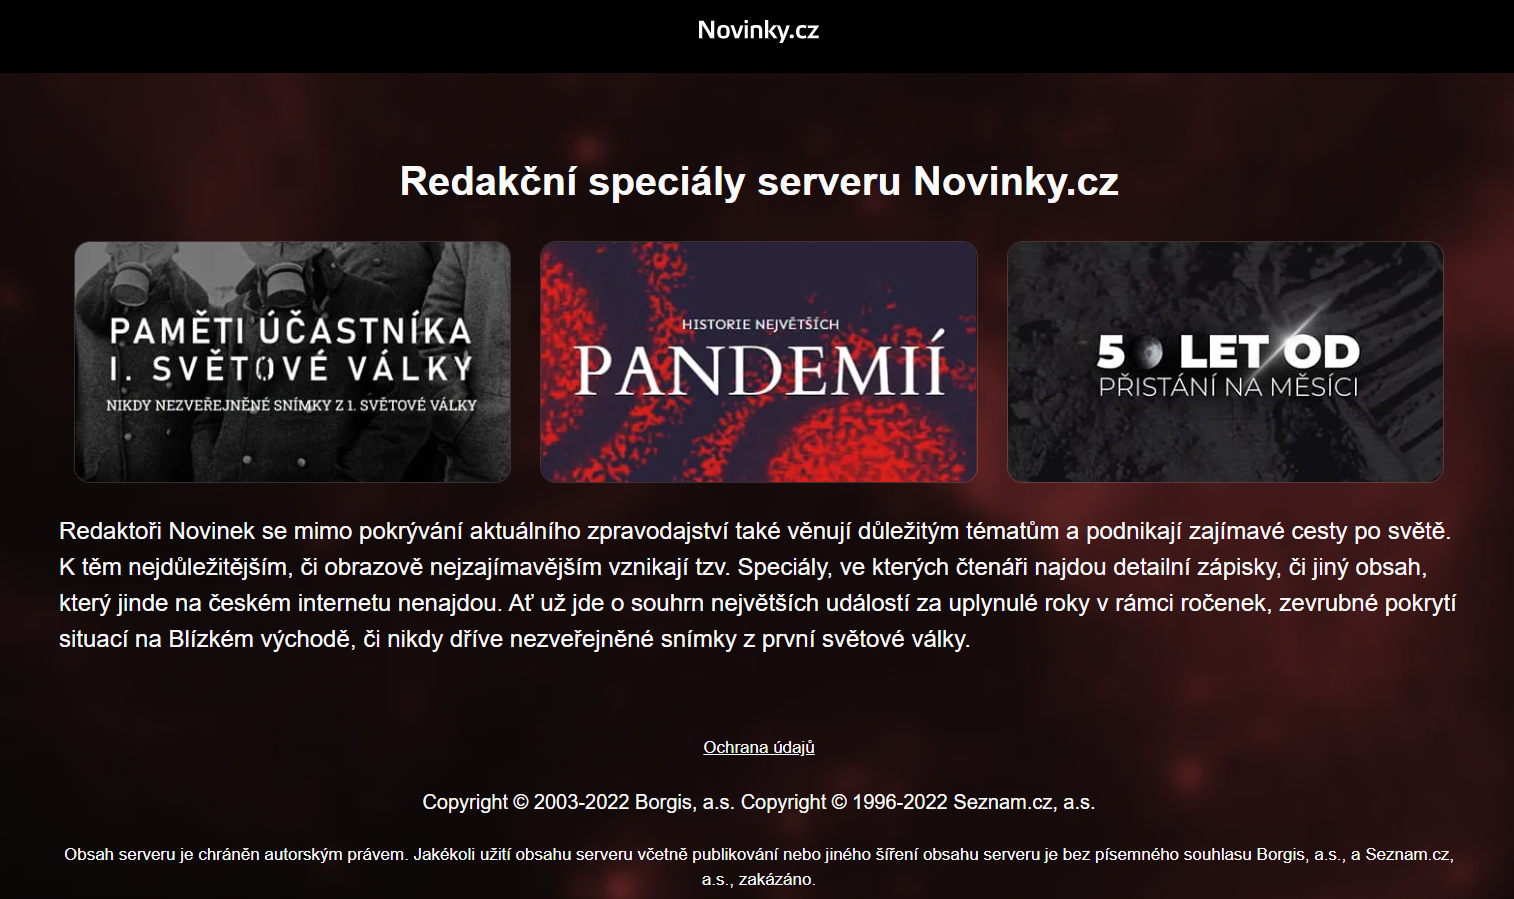 Další speciály serveru Novinky.cz